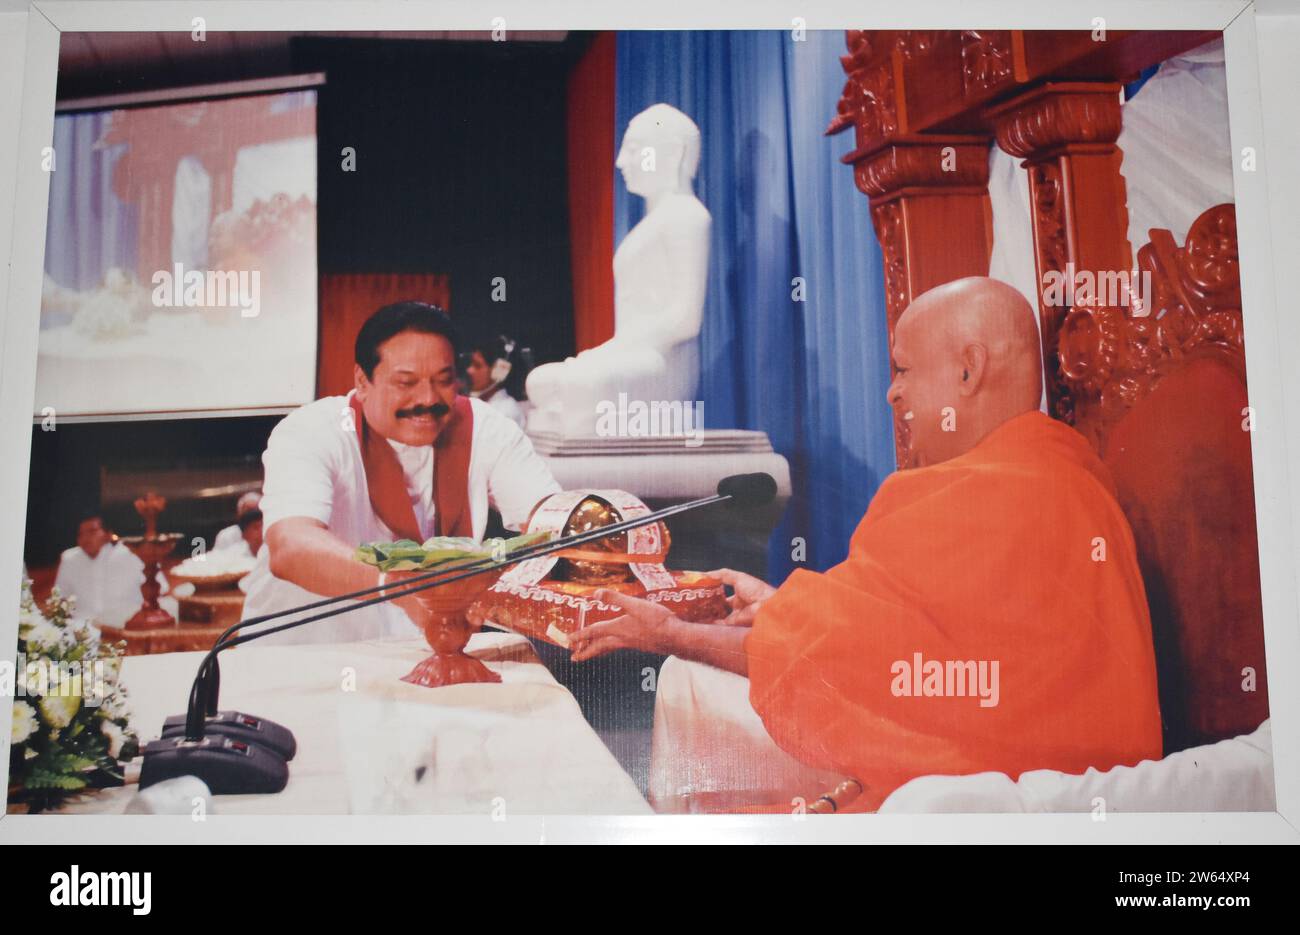 Une photographie de l'ancien président du Sri Lanka, Mahinda Rajapaksa donnant des armes à un moine en chef dans un temple. Il a été président du Sri Lanka de 2005 à 2015, premier ministre du Sri Lanka de 2004 à 2005, 2018 et 2019 à 2022. Colombo, Sri Lanka. Banque D'Images